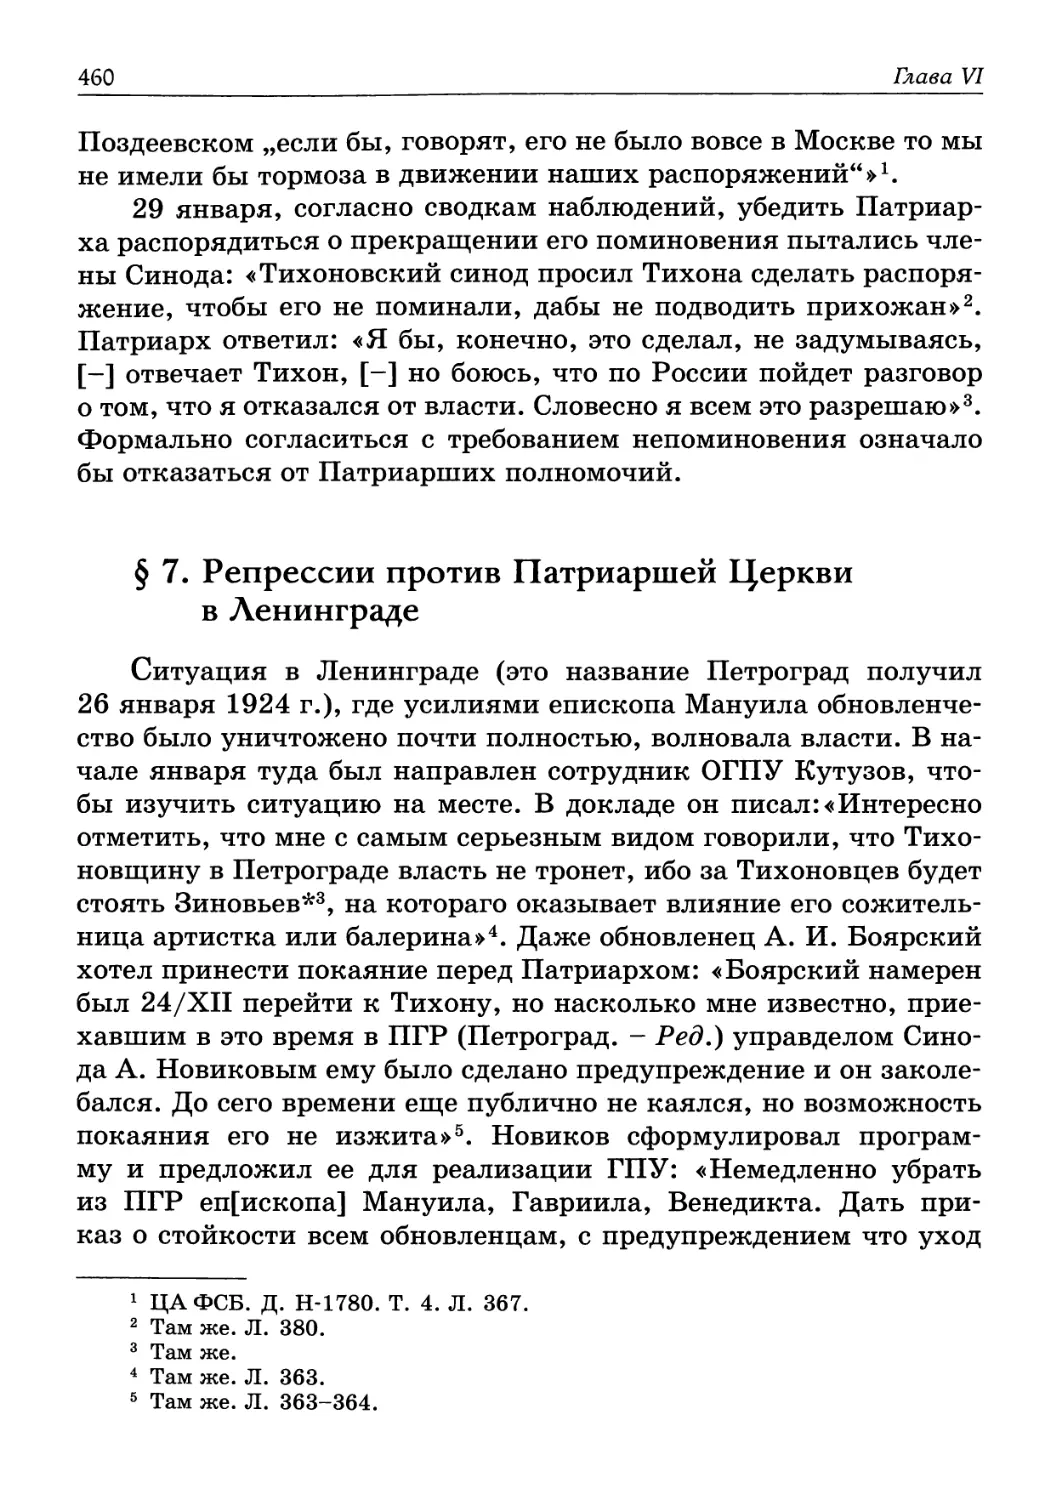 § 7. Репрессии против Патриаршей Церкви в Ленинграде